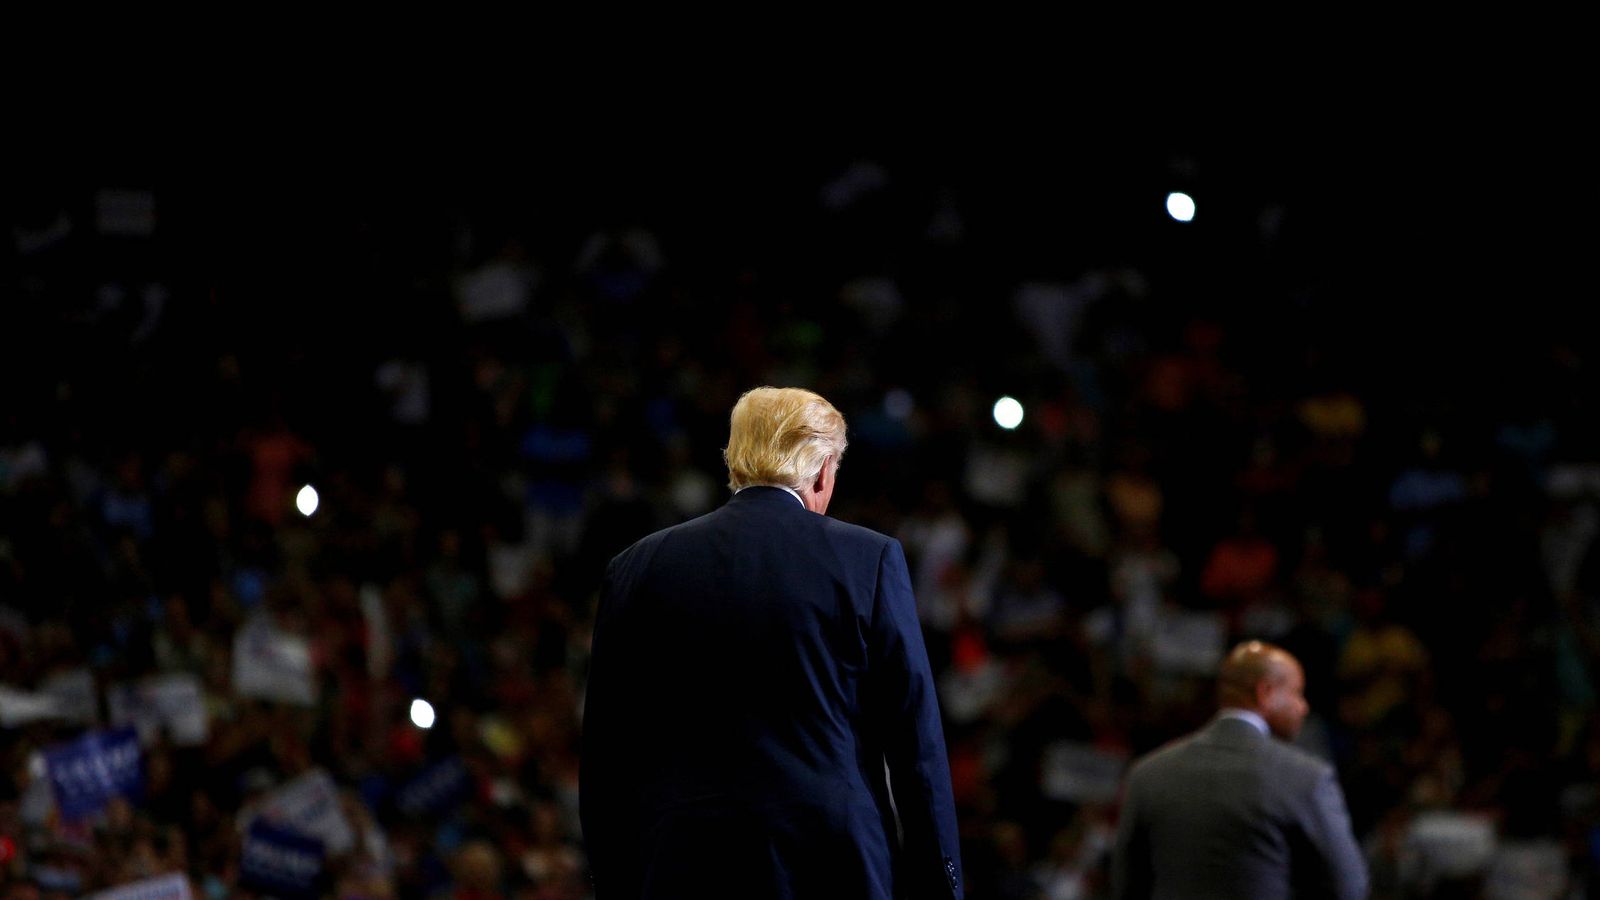 Foto: El candidato republicano Donald Trump durante un acto de campaña en Jacksonville, Florida (Reuters).